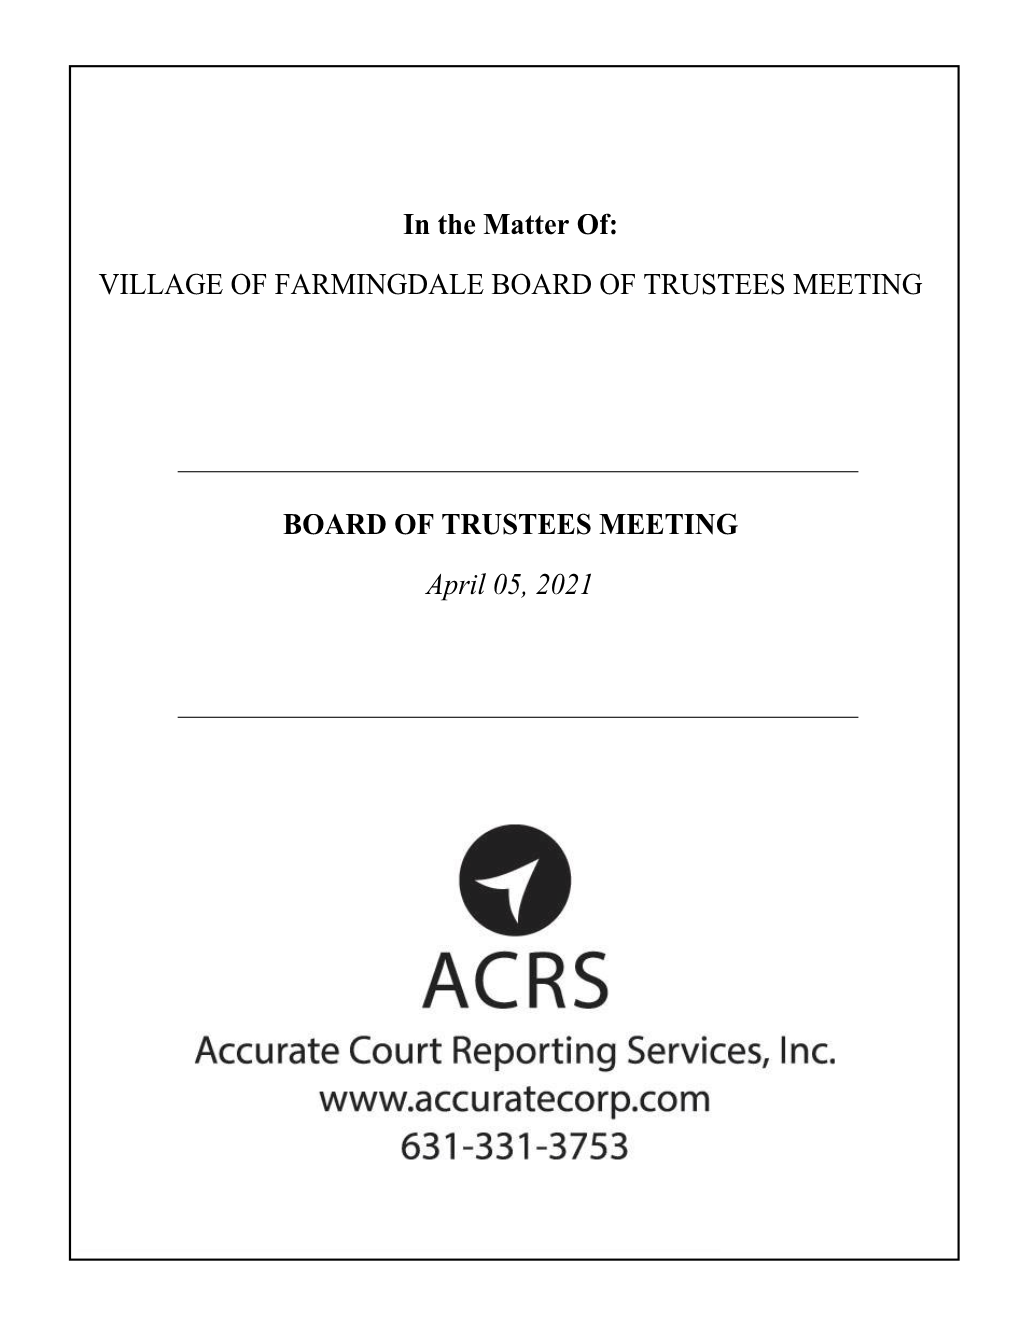 Trustees Meeting, Board of 04-05-2021